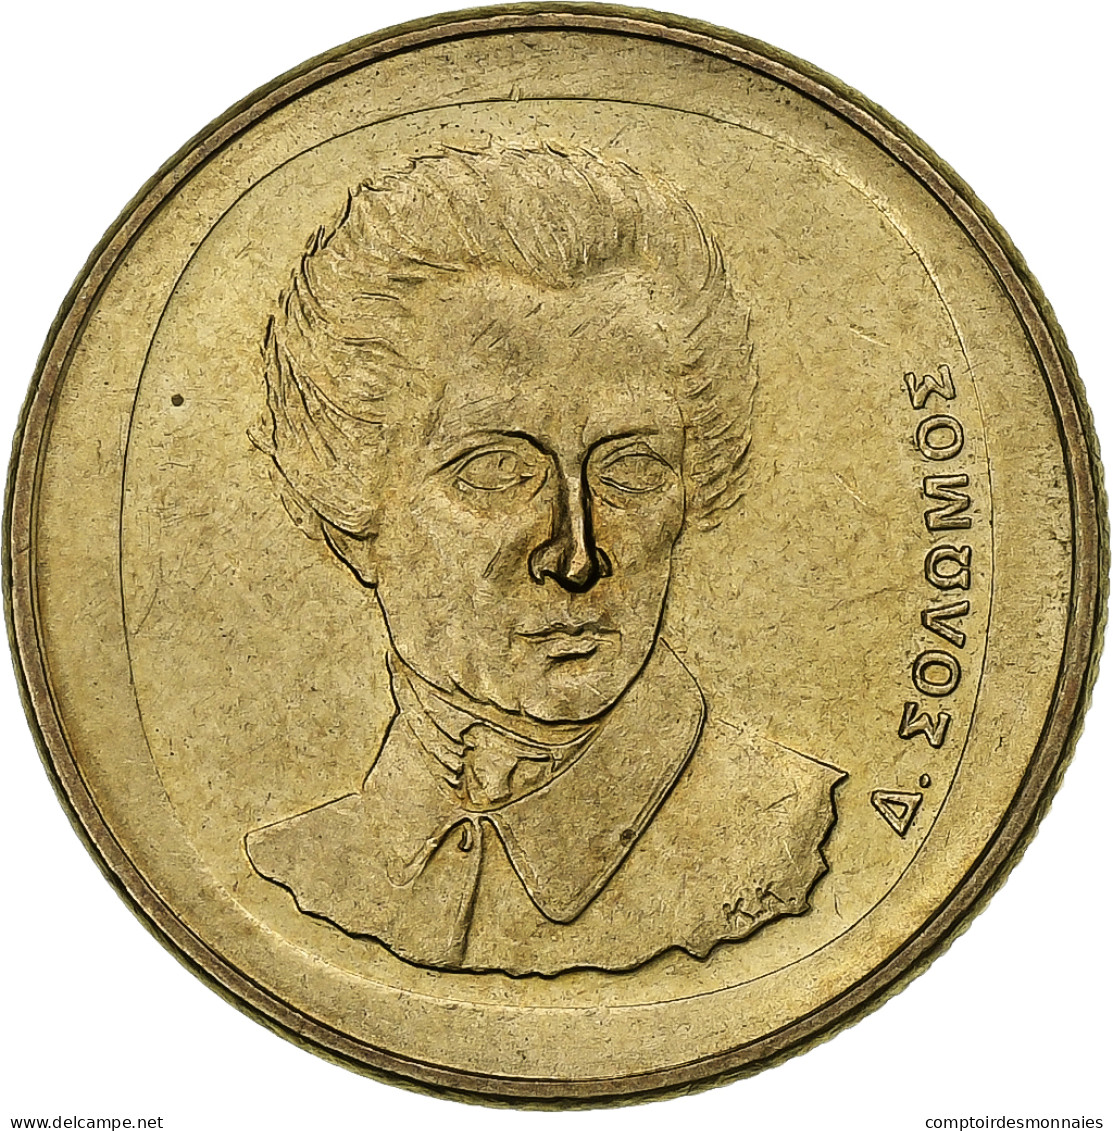 Grèce, 20 Drachmes, 1990, Bronze-Aluminium, SUP, KM:154 - Griechenland